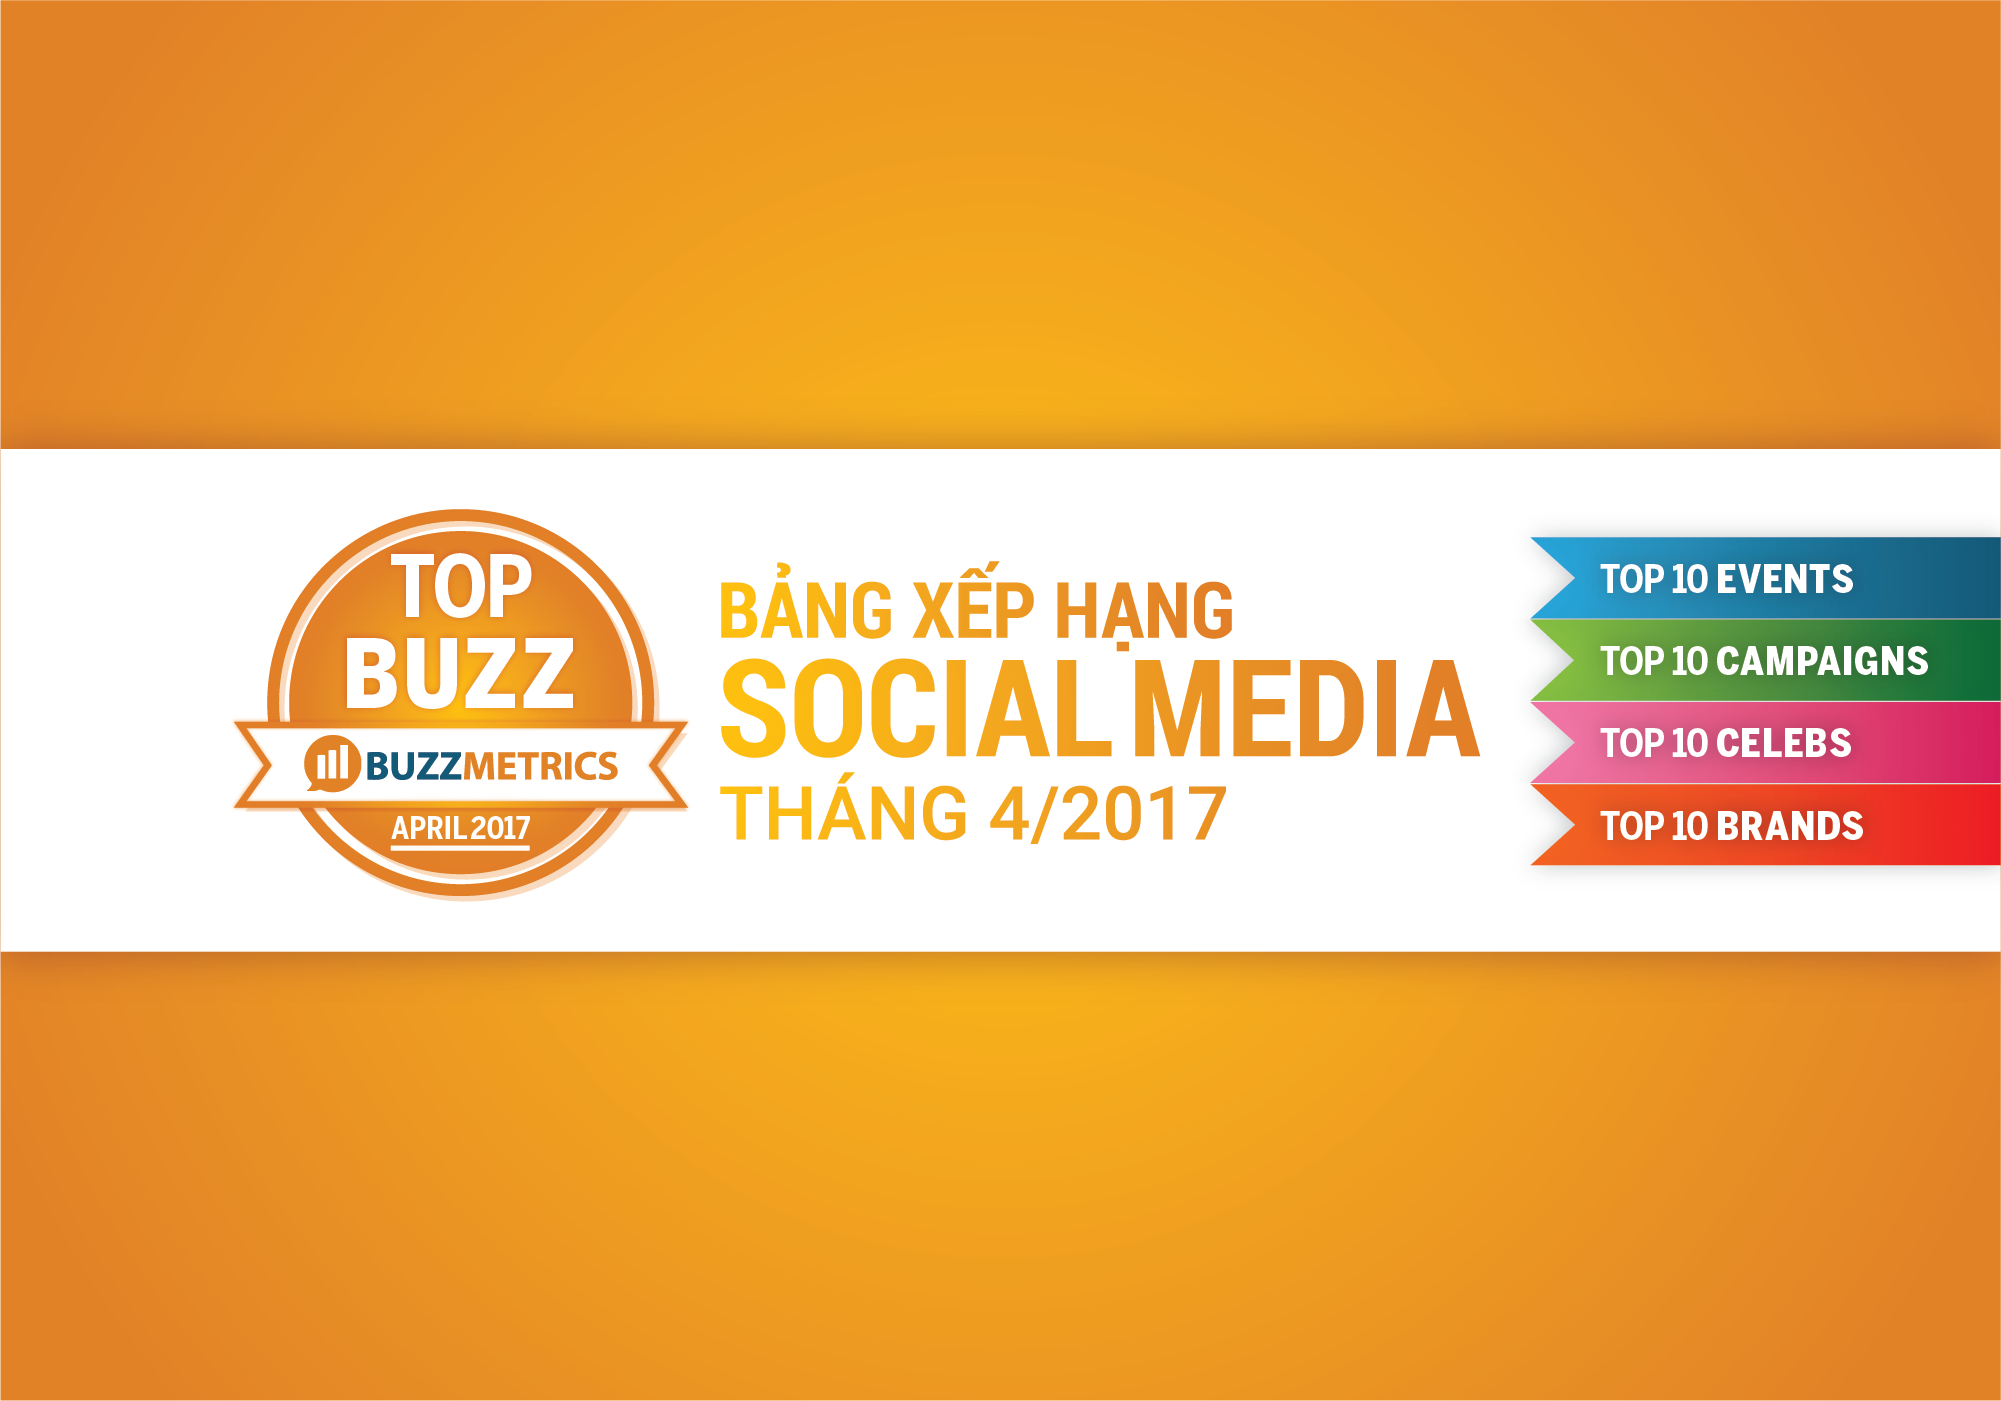 TOPBUZZ: Bảng xếp hạng social media tháng 04/2017 | Bài viết BSI | Buzzmetrics